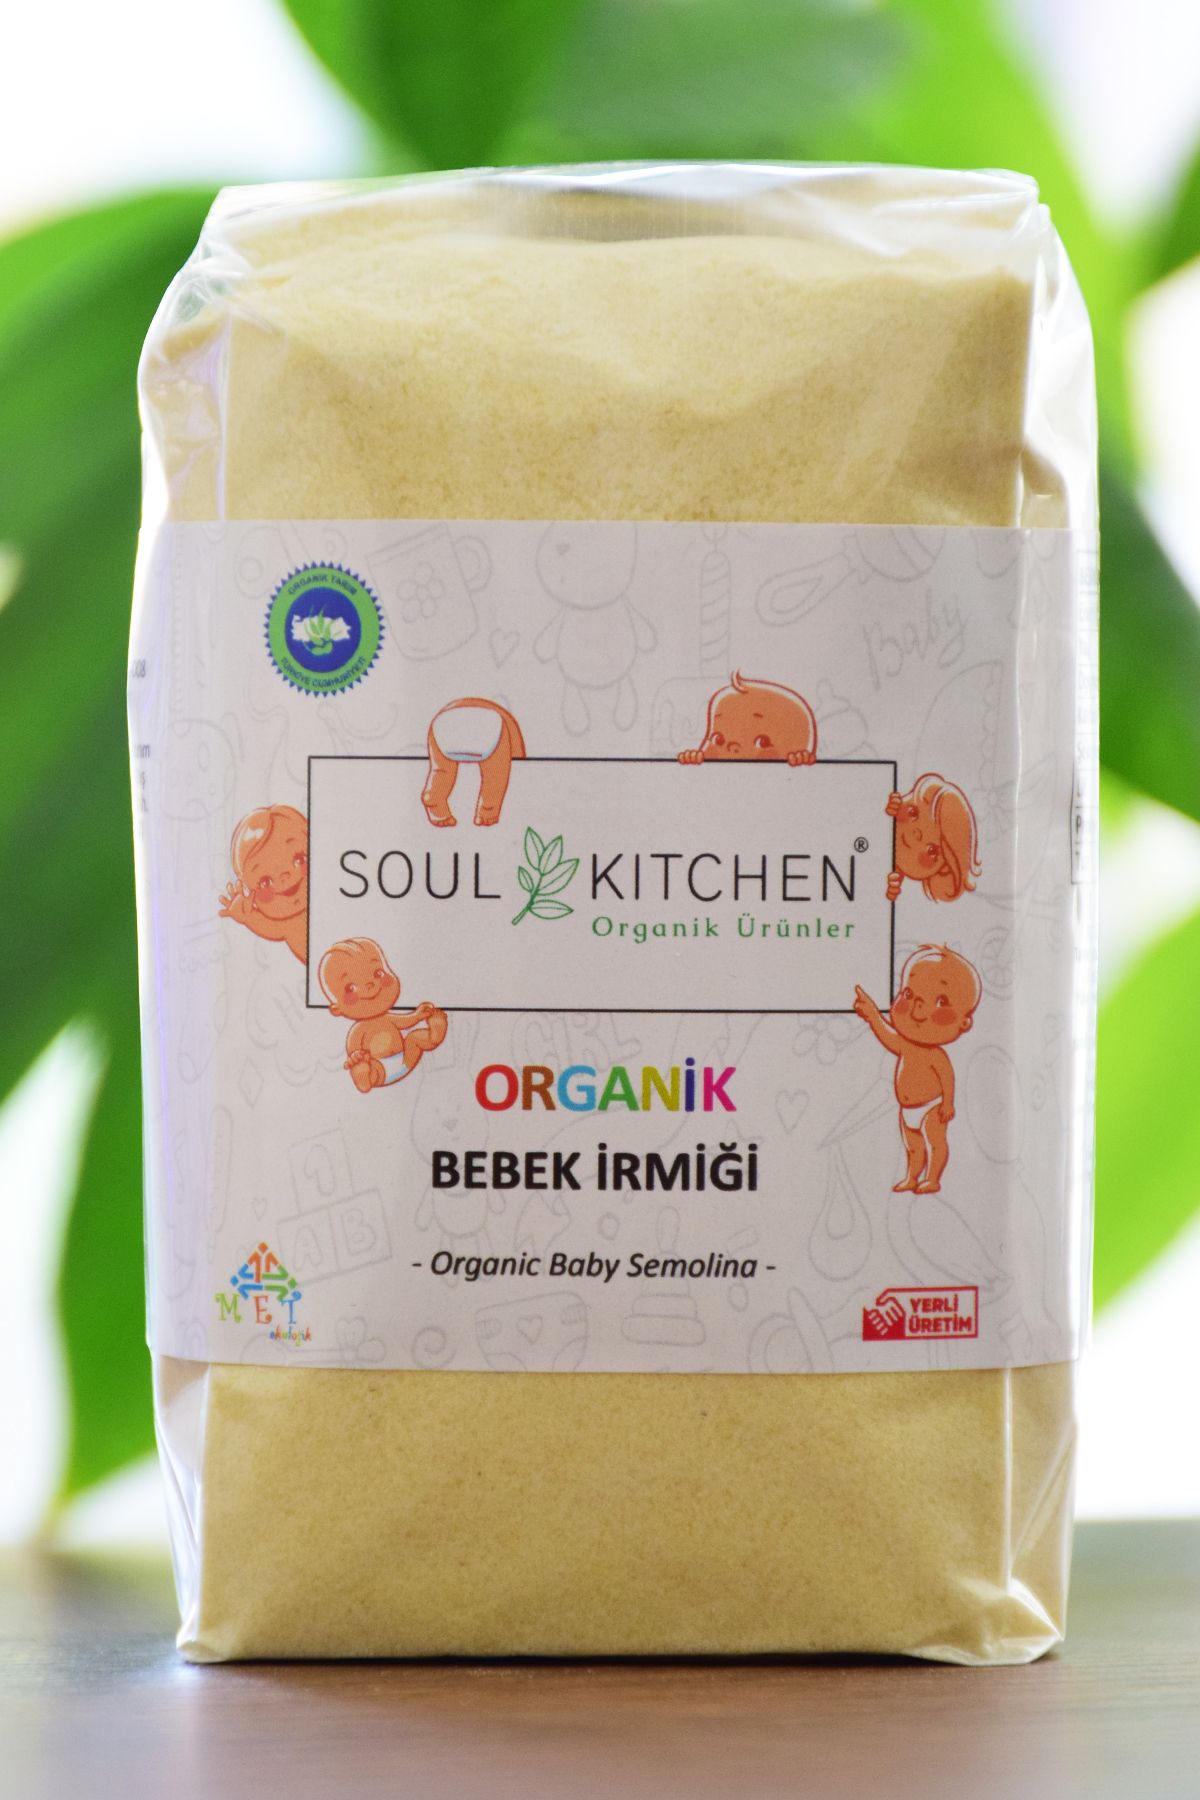 Soul Kitchen Organik Ürünler Organik Bebek İrmiği 250gr